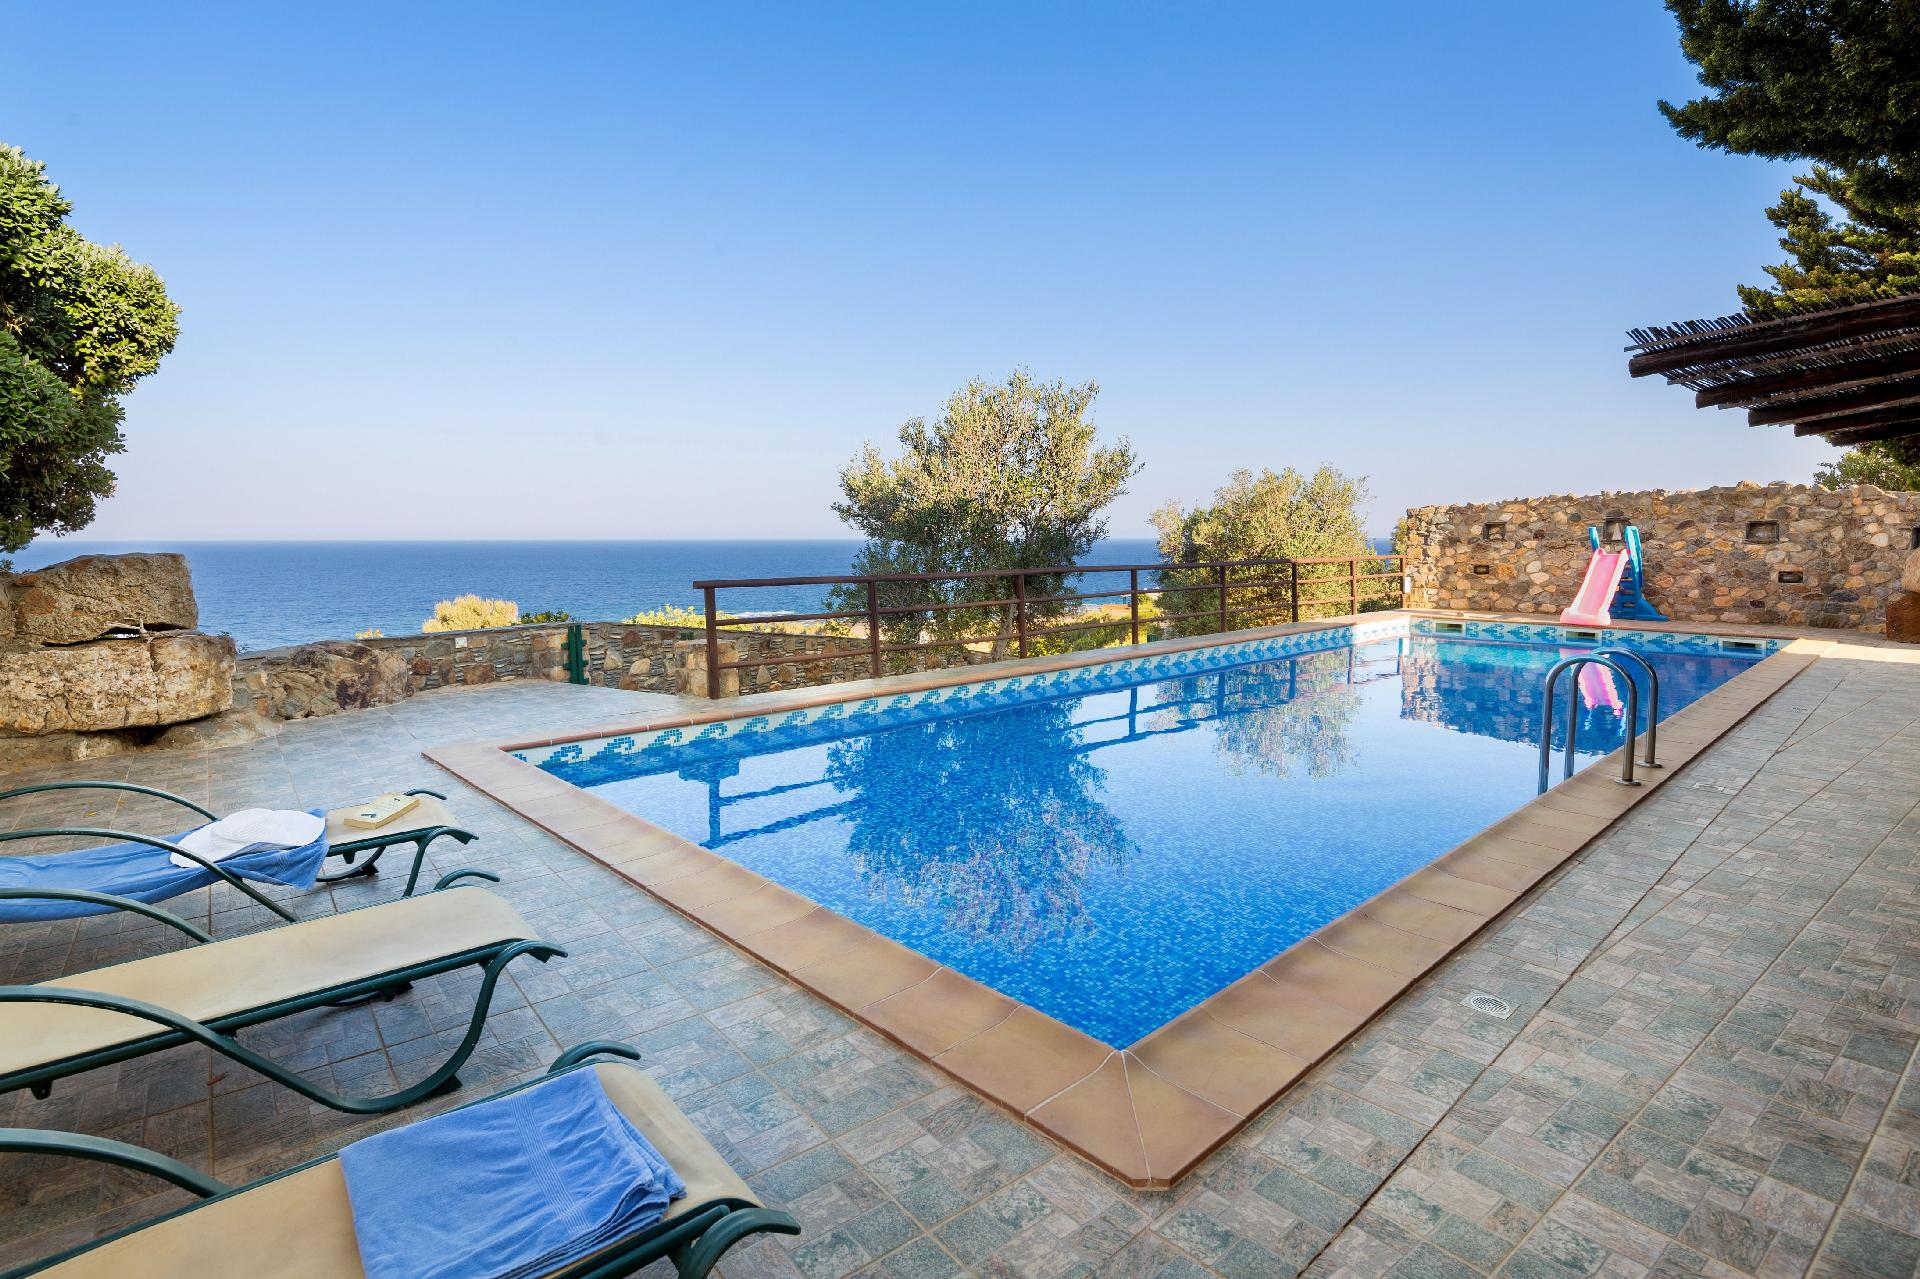 Ferienhaus mit Privatpool für 9 Personen ca.  Ferienhaus in Griechenland